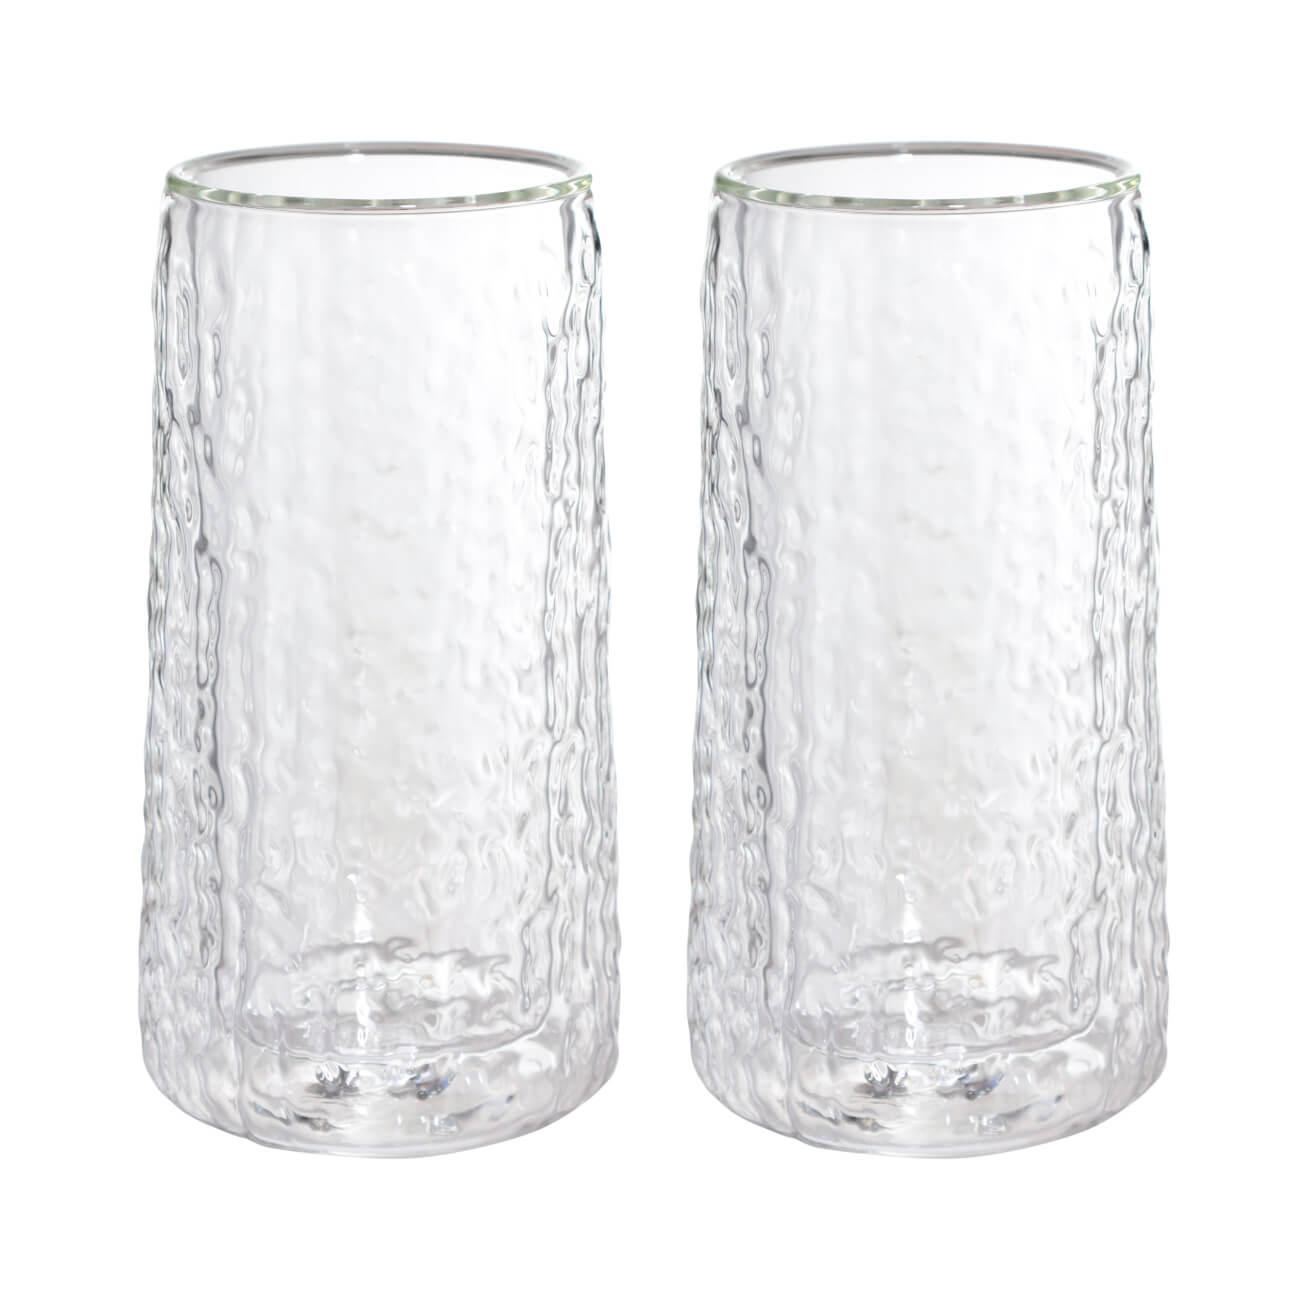 Стакан, 320 мл, 2 шт, стекло Б, Air ripply бокал для мартини 250 мл 2 шт стекло перламутр ripply polar